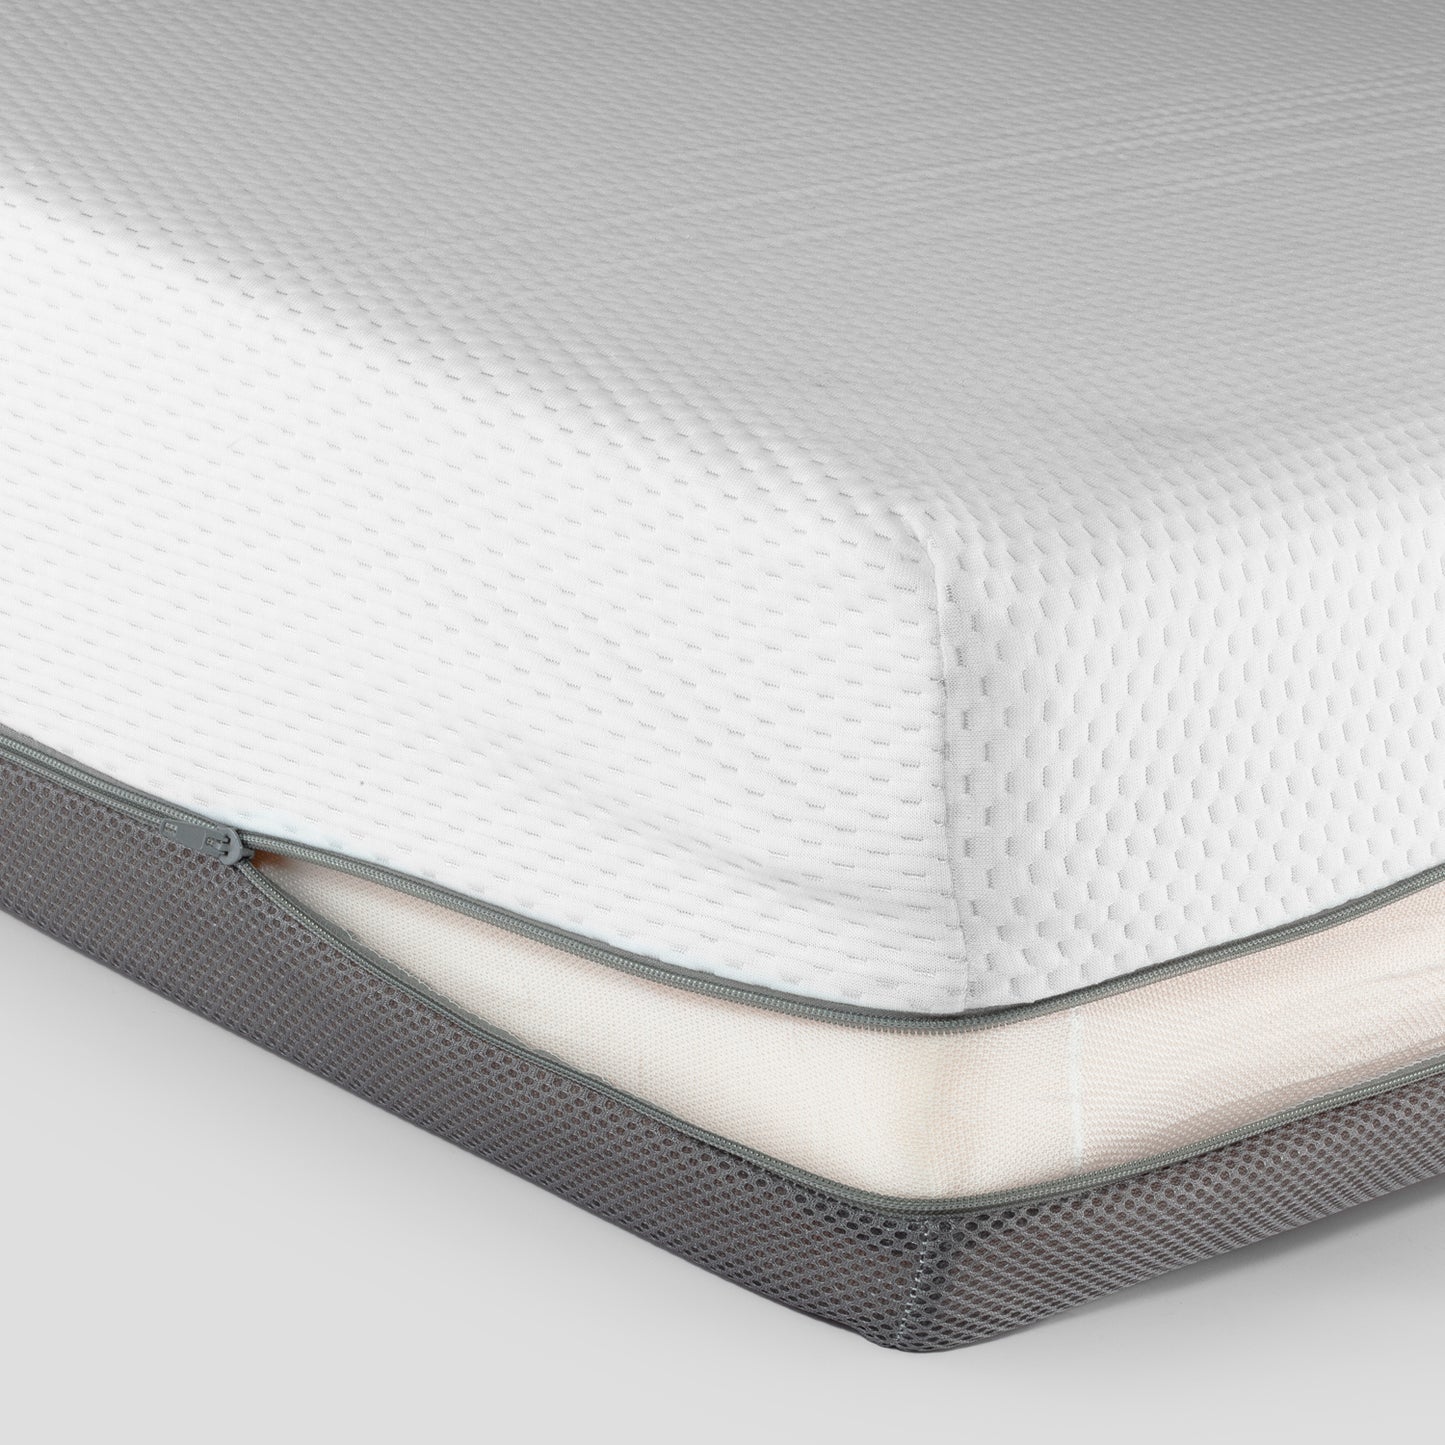 Visco -elastische matras Elion voor gearticuleerd bed